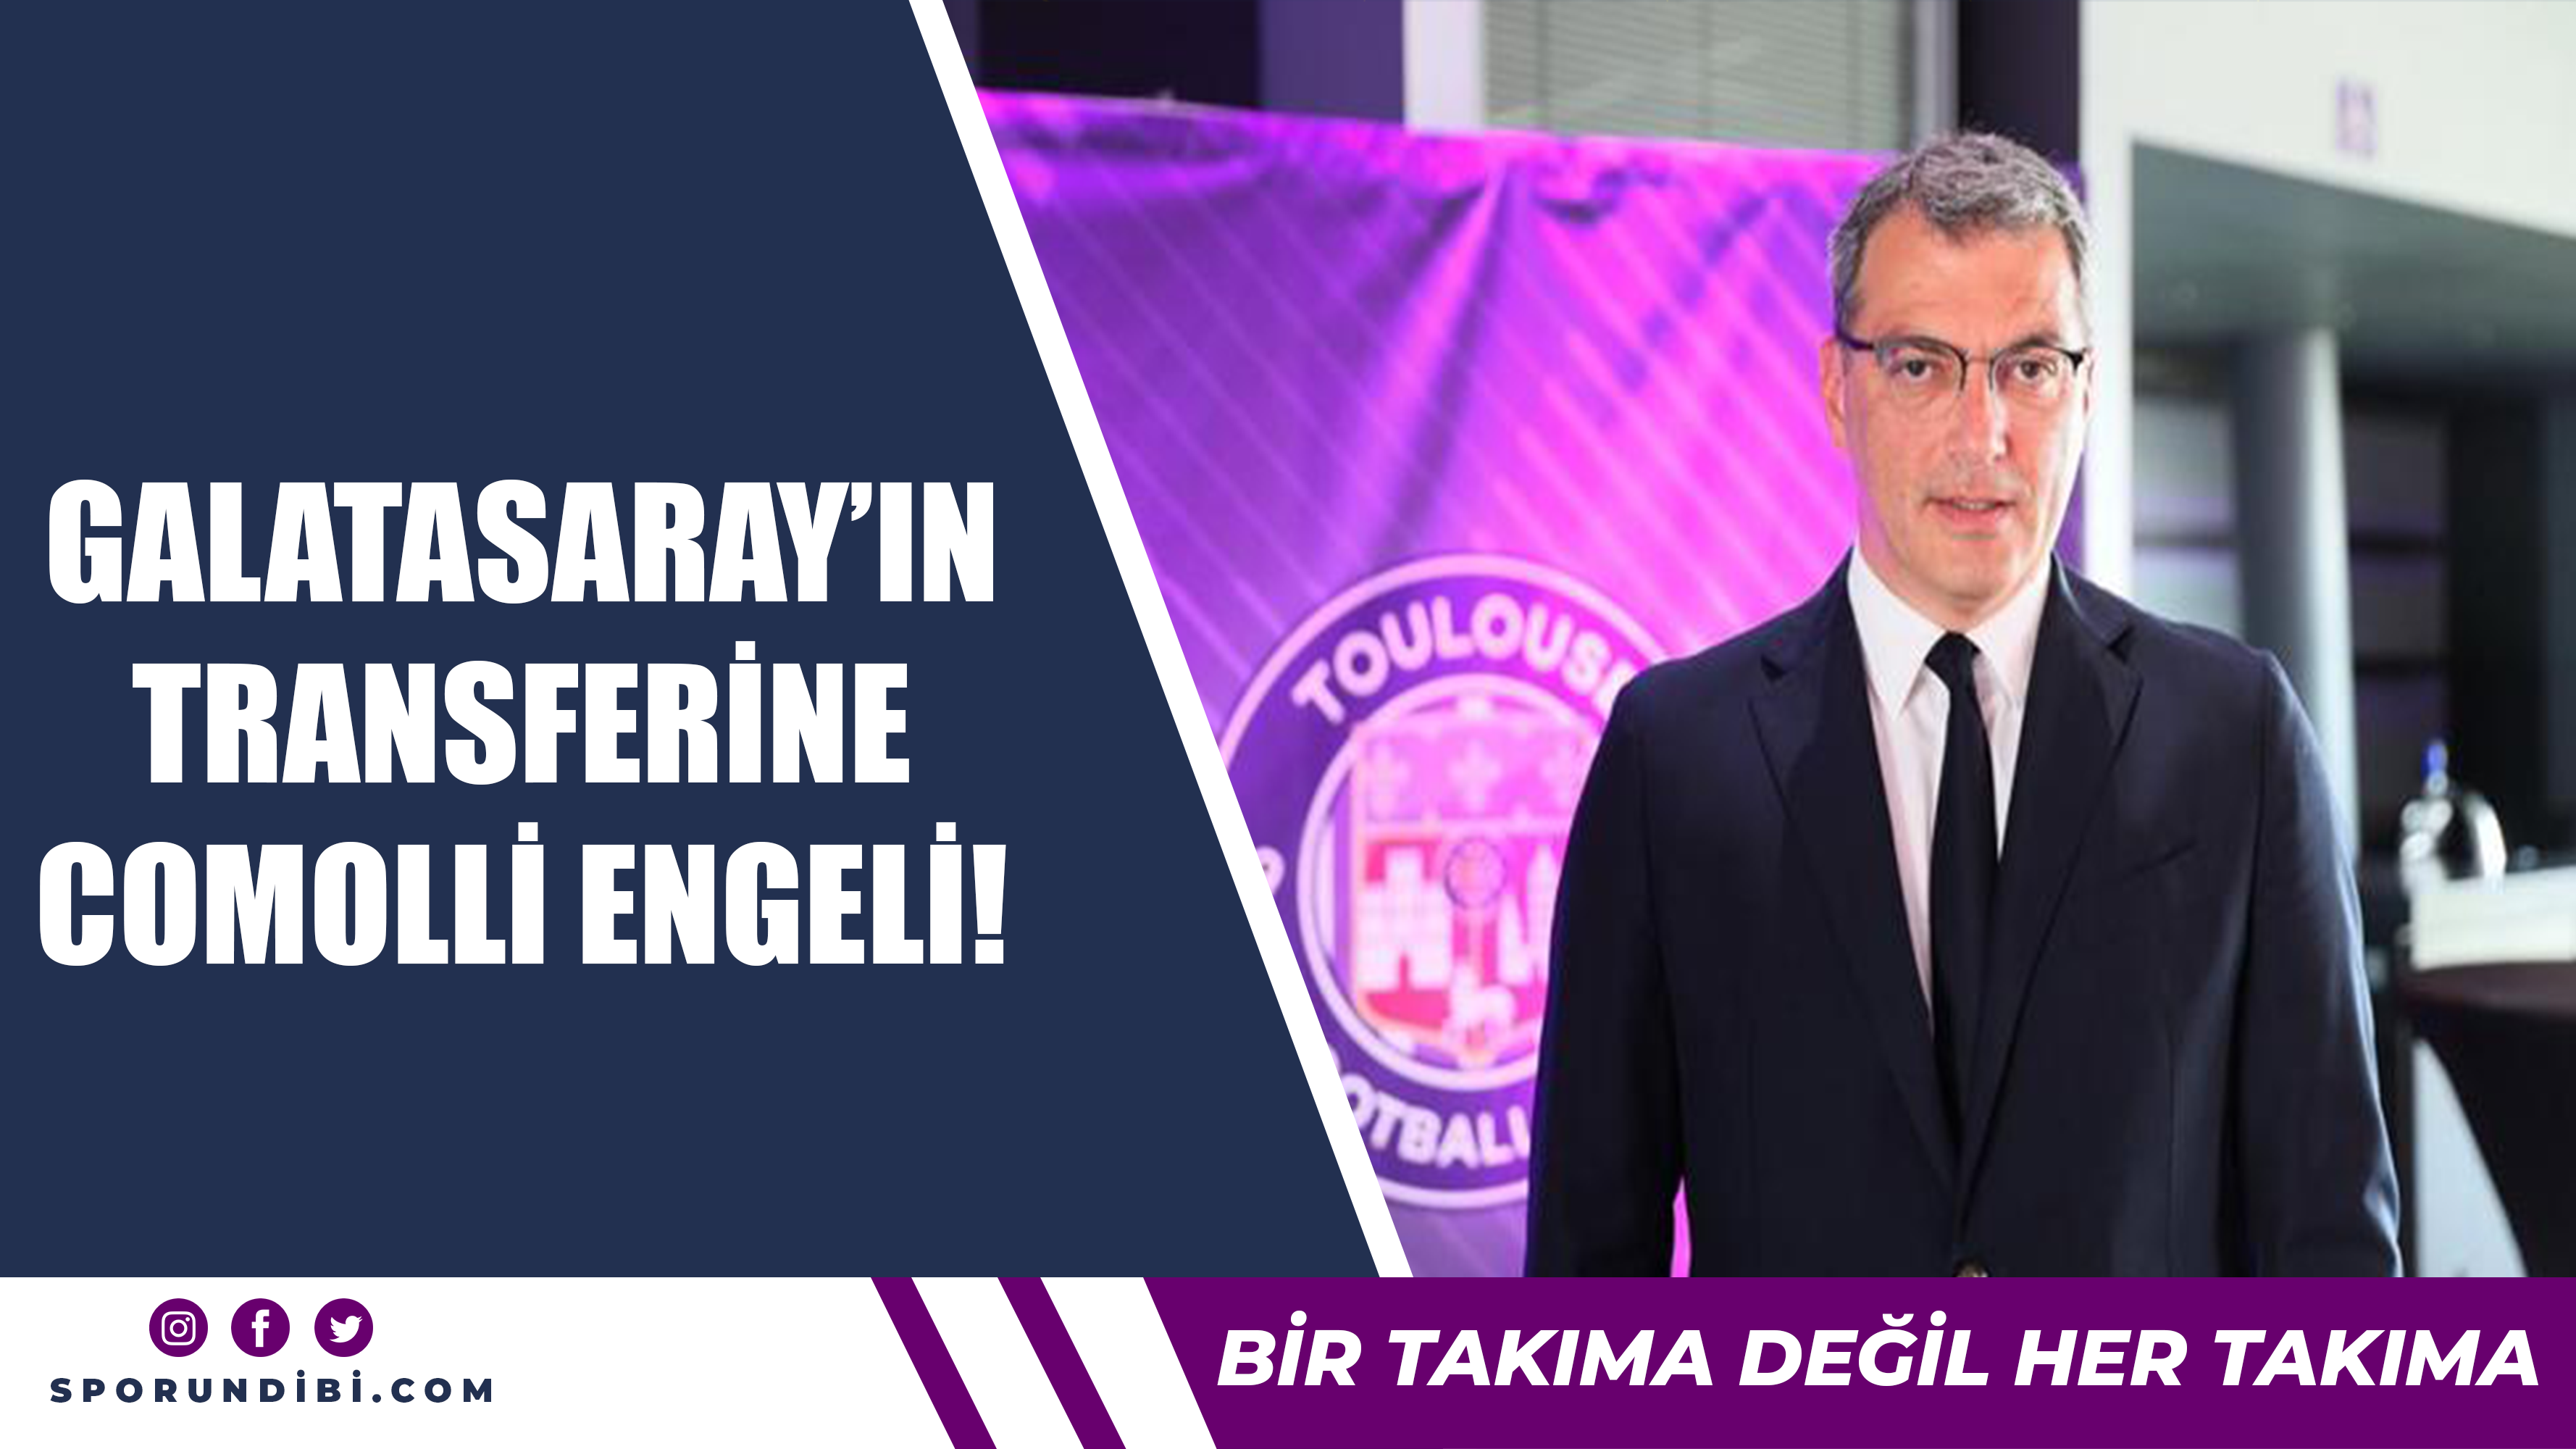 Galatasaray'ın transferine Comolli engeli!